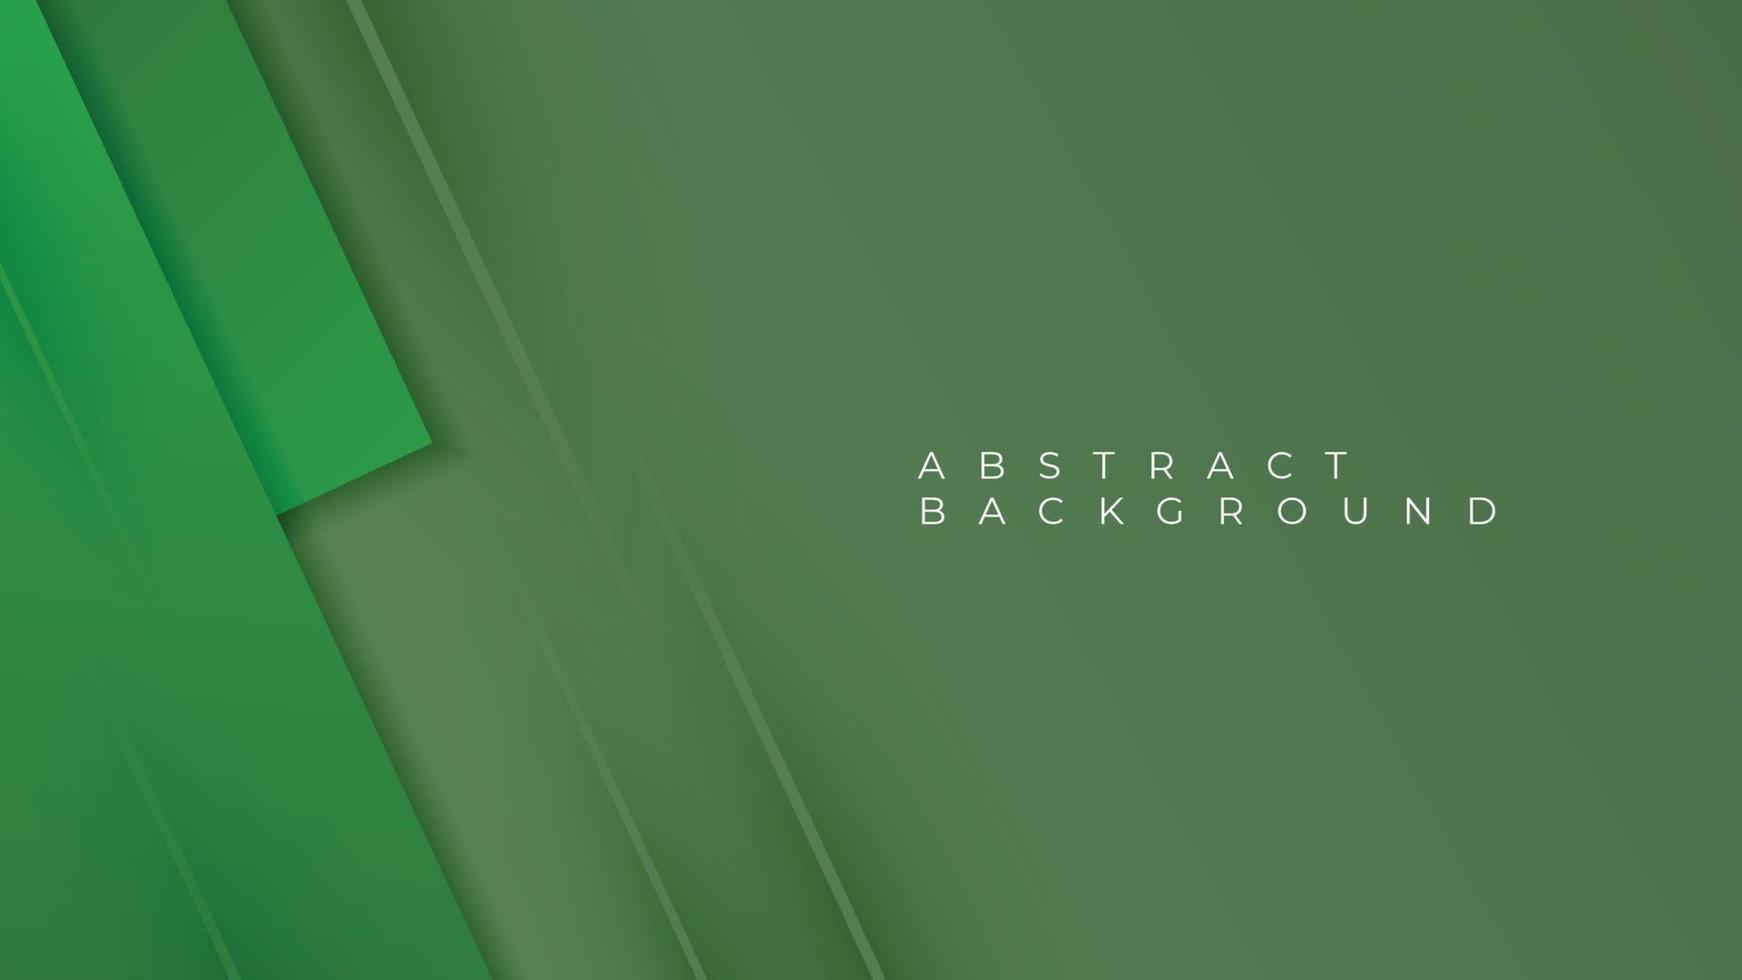 abstracte groene overlappende achtergrond, overlappende groene laag op groene donkere ruimteachtergrond voor tekst en bericht. vector illustratie